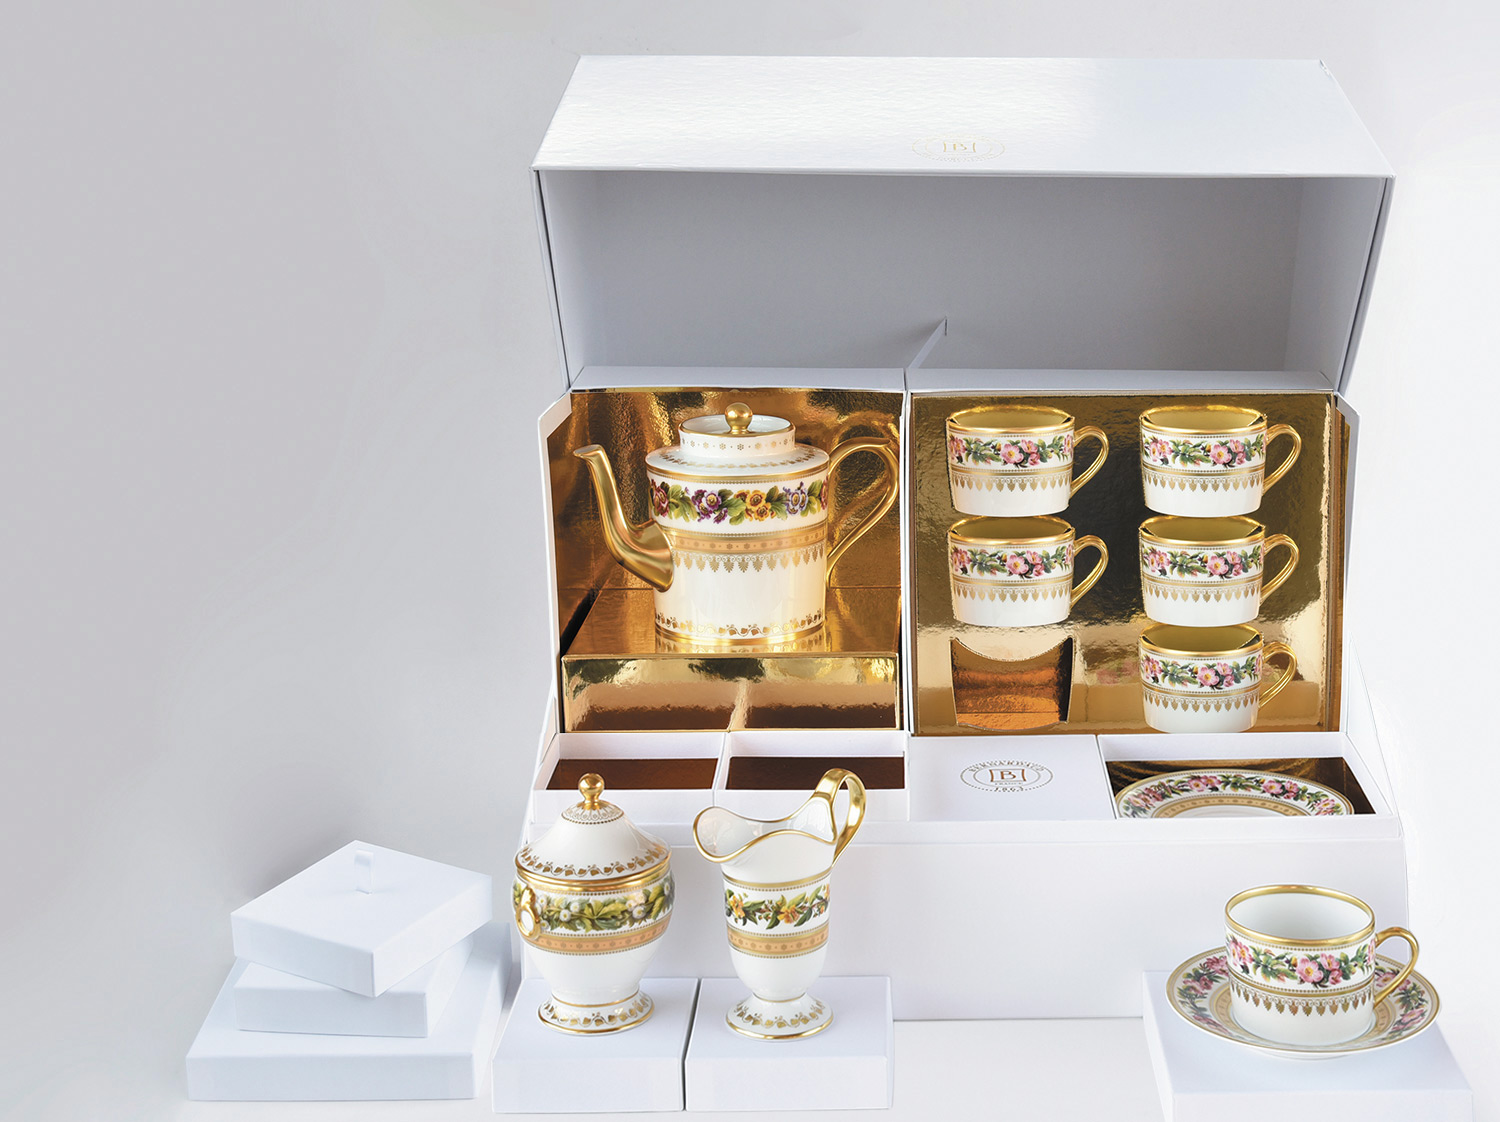 Grand coffret service à thé (théière, crémier, sucrier, 6 tasses et soucoupes thé) en porcelaine de la collection Botanique Bernardaud